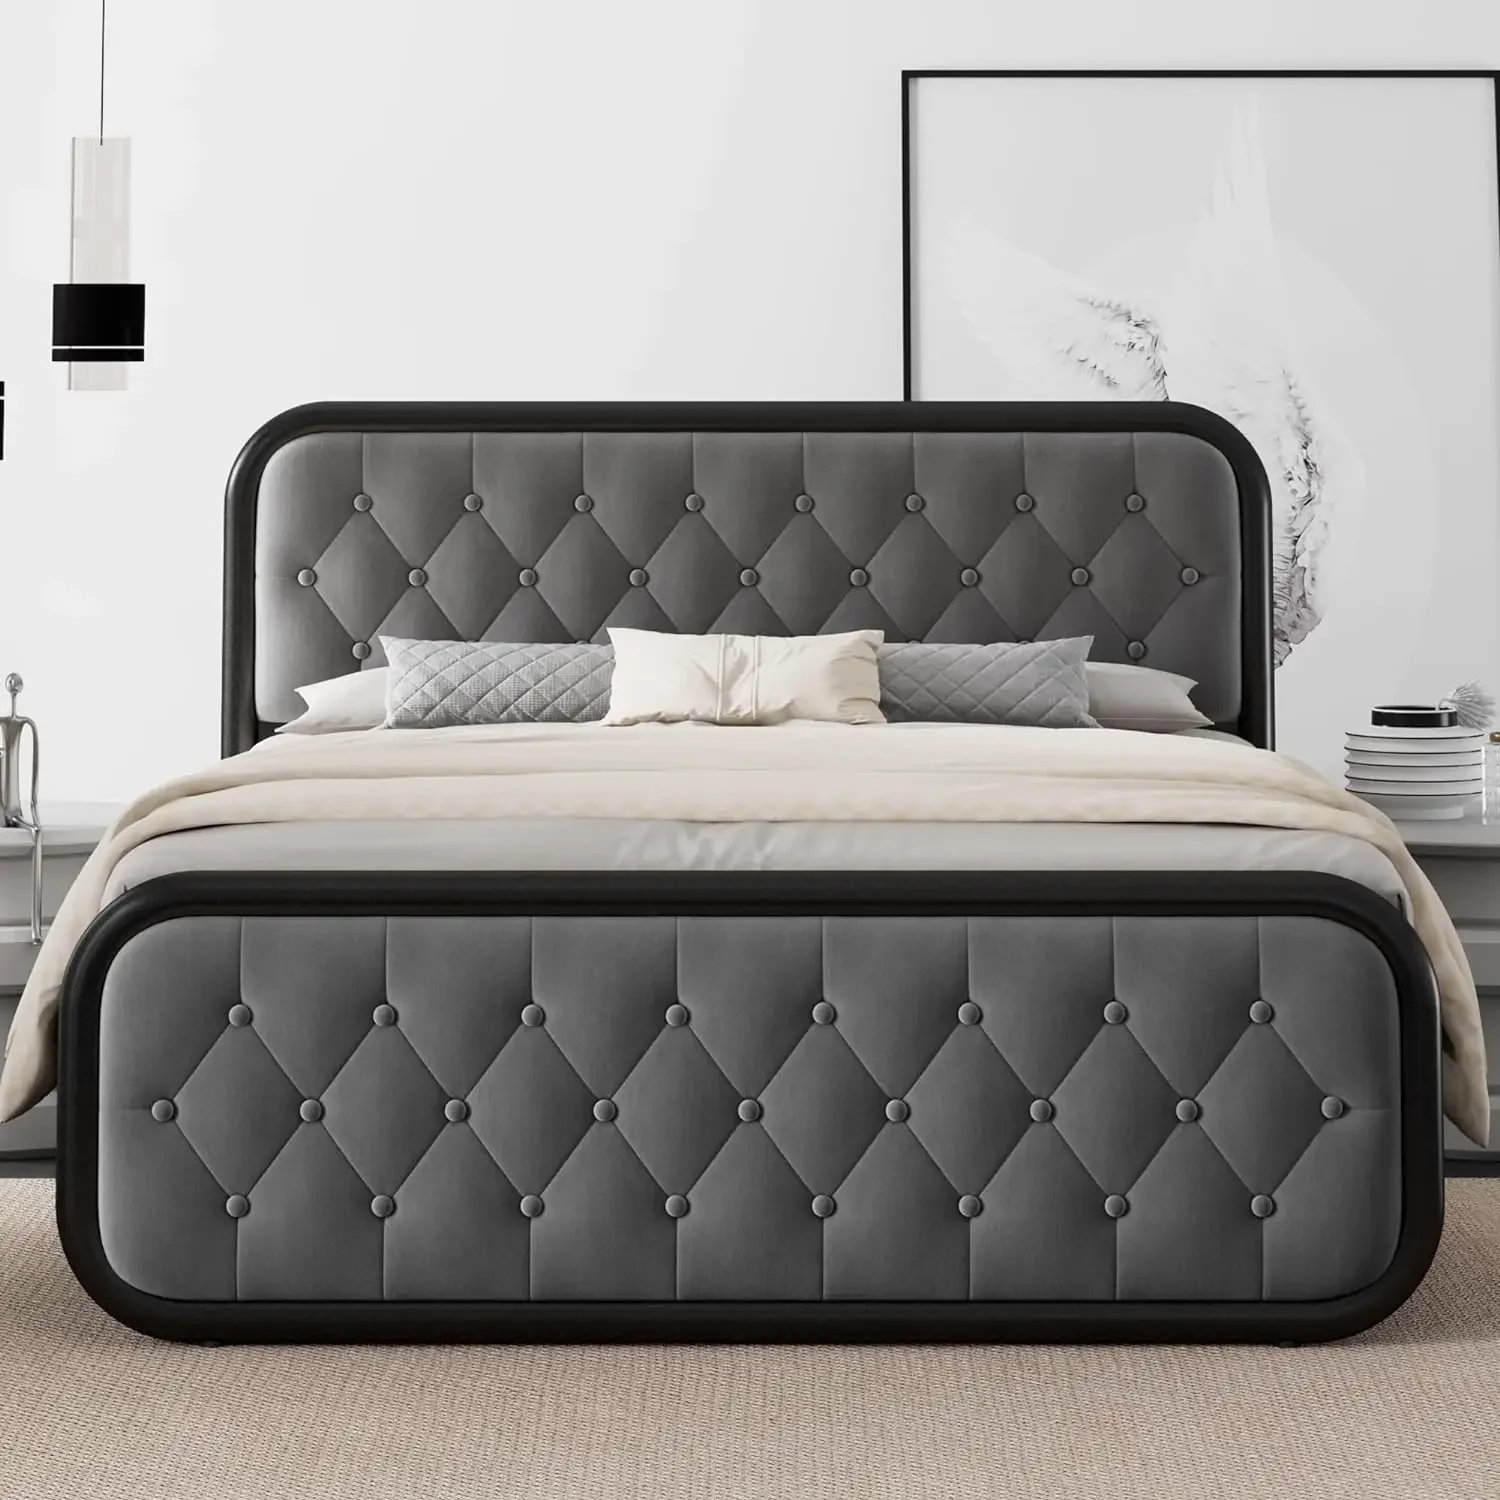 California King Bed: A Roomy Retreat for Sleep Aficionados插图